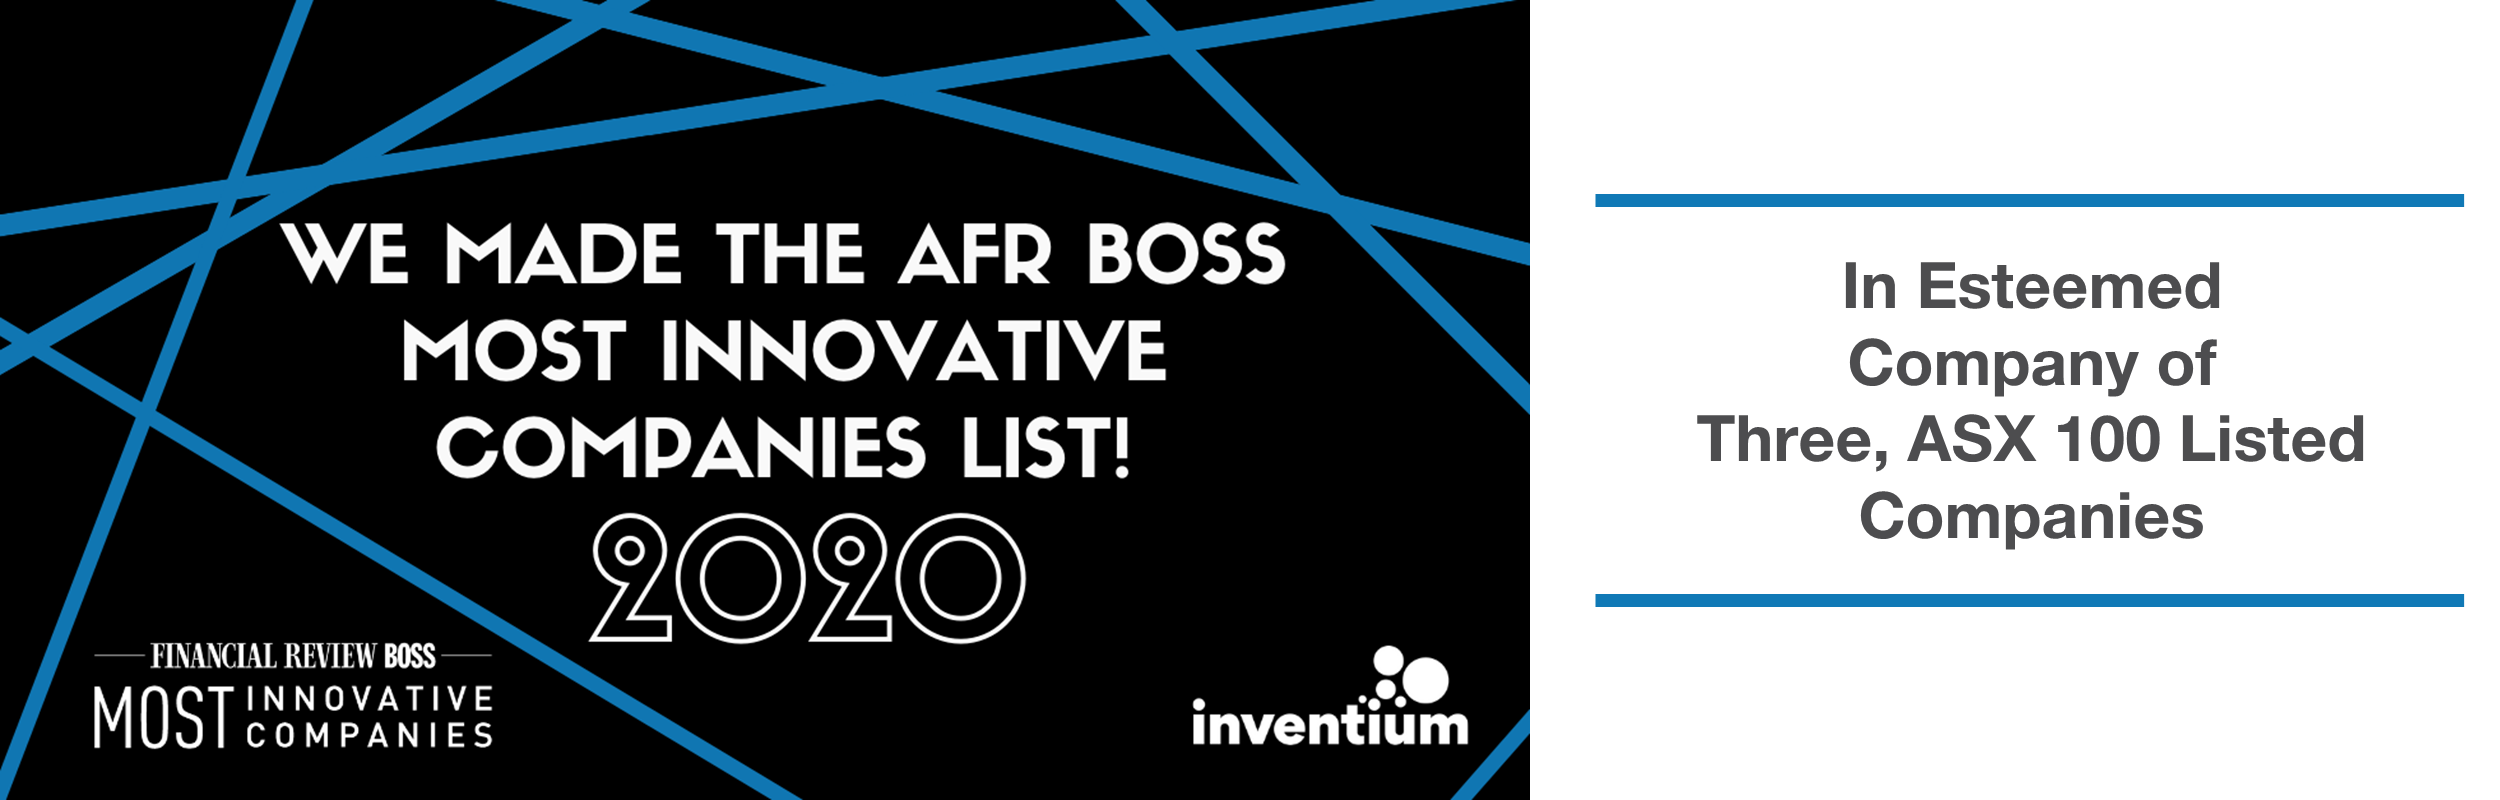 AFR_Boss_Innovative